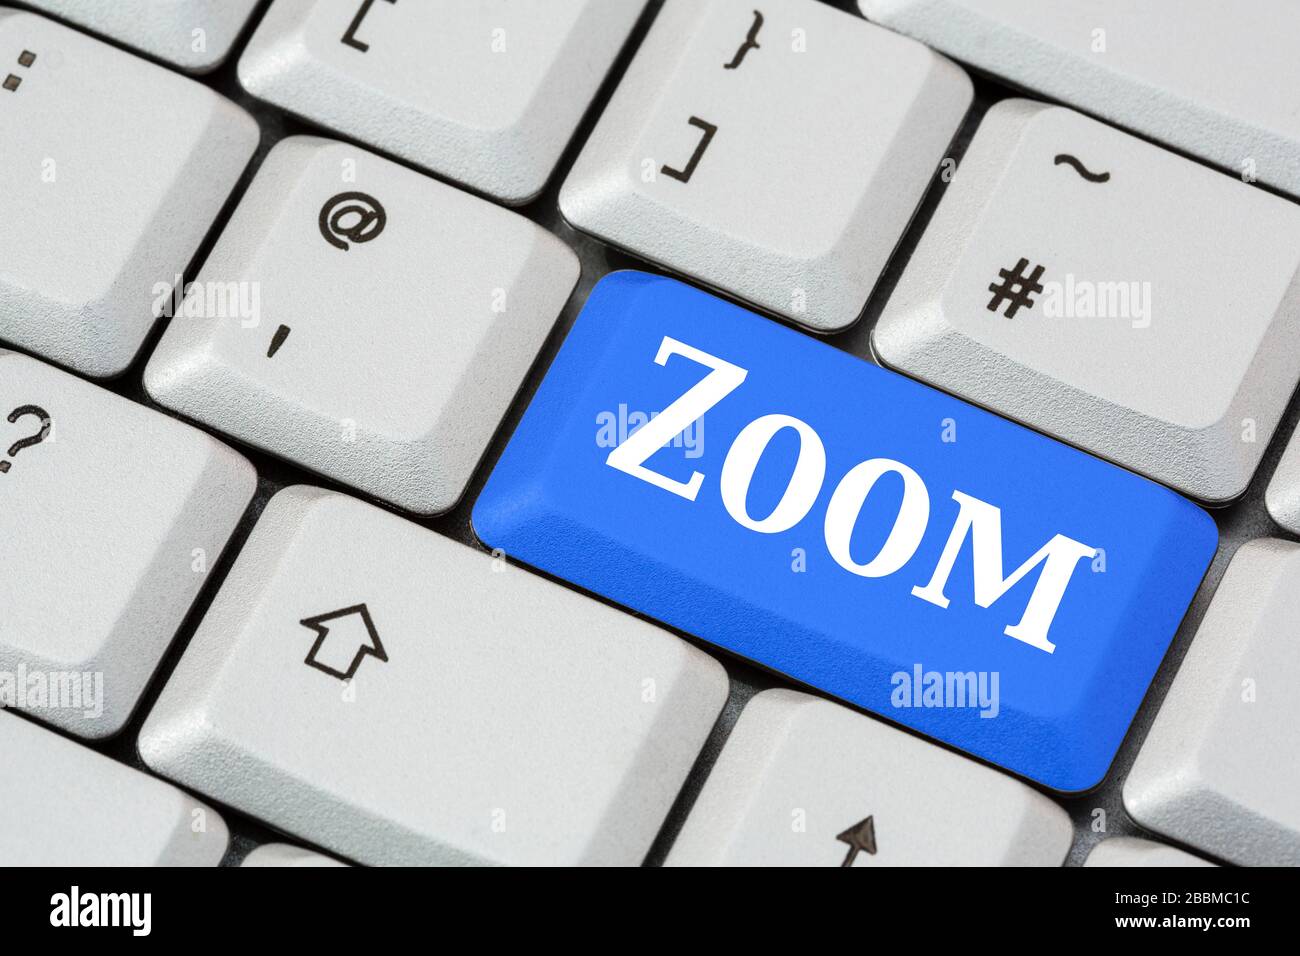 Una tastiera con la scritta Zoom in bianco su un tasto blu invio. Applicazione Zoom per il concetto di videochiamata in conferenza. Inghilterra, Regno Unito, Gran Bretagna Foto Stock